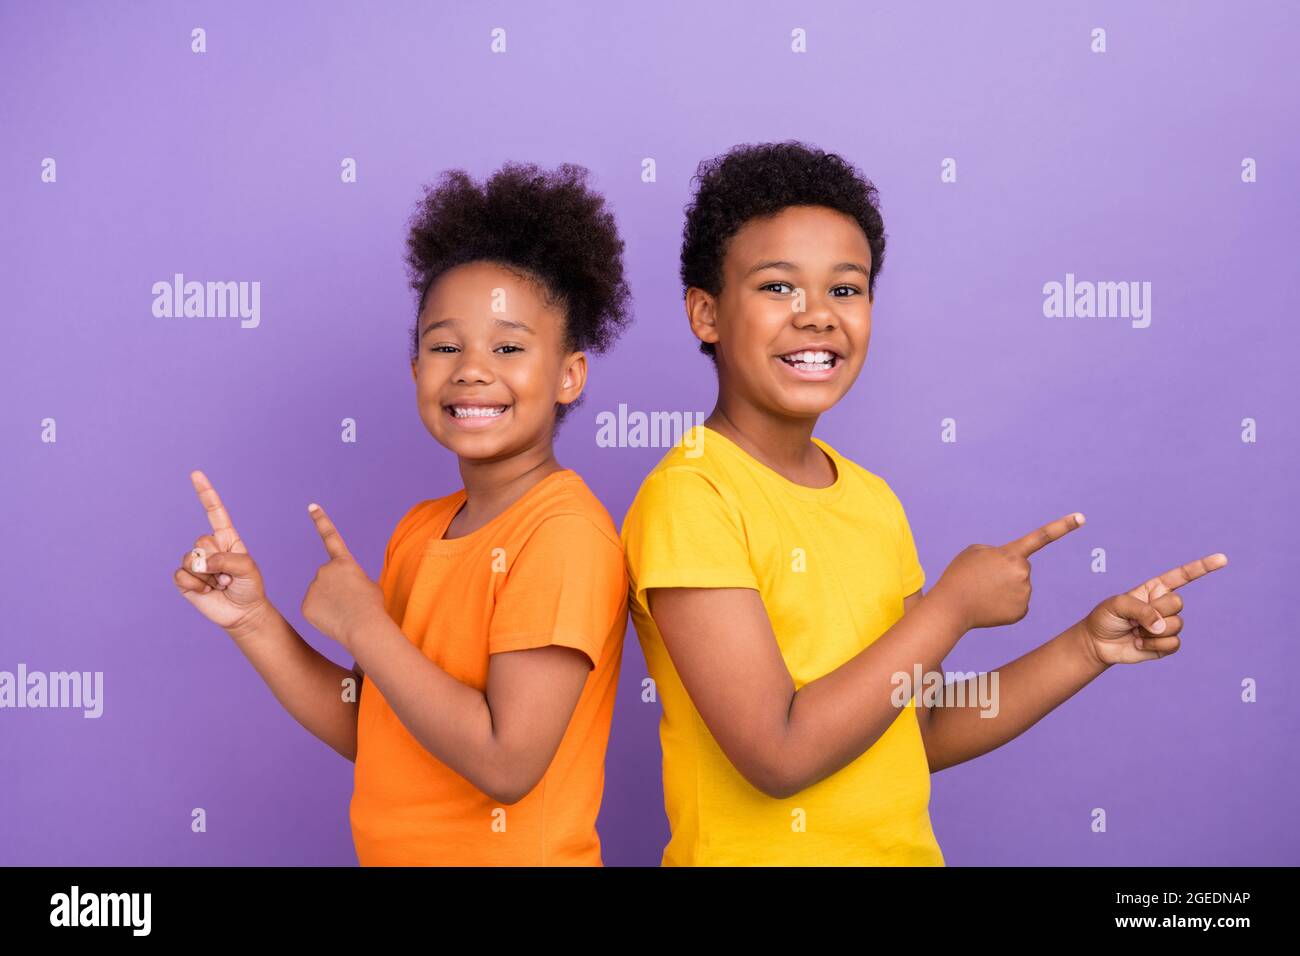 Profil Seite Foto von zwei jungen afro Kind zeigen Finger leeren Raum ad promo Beratung wählen isoliert über violette Farbe Hintergrund Stockfoto